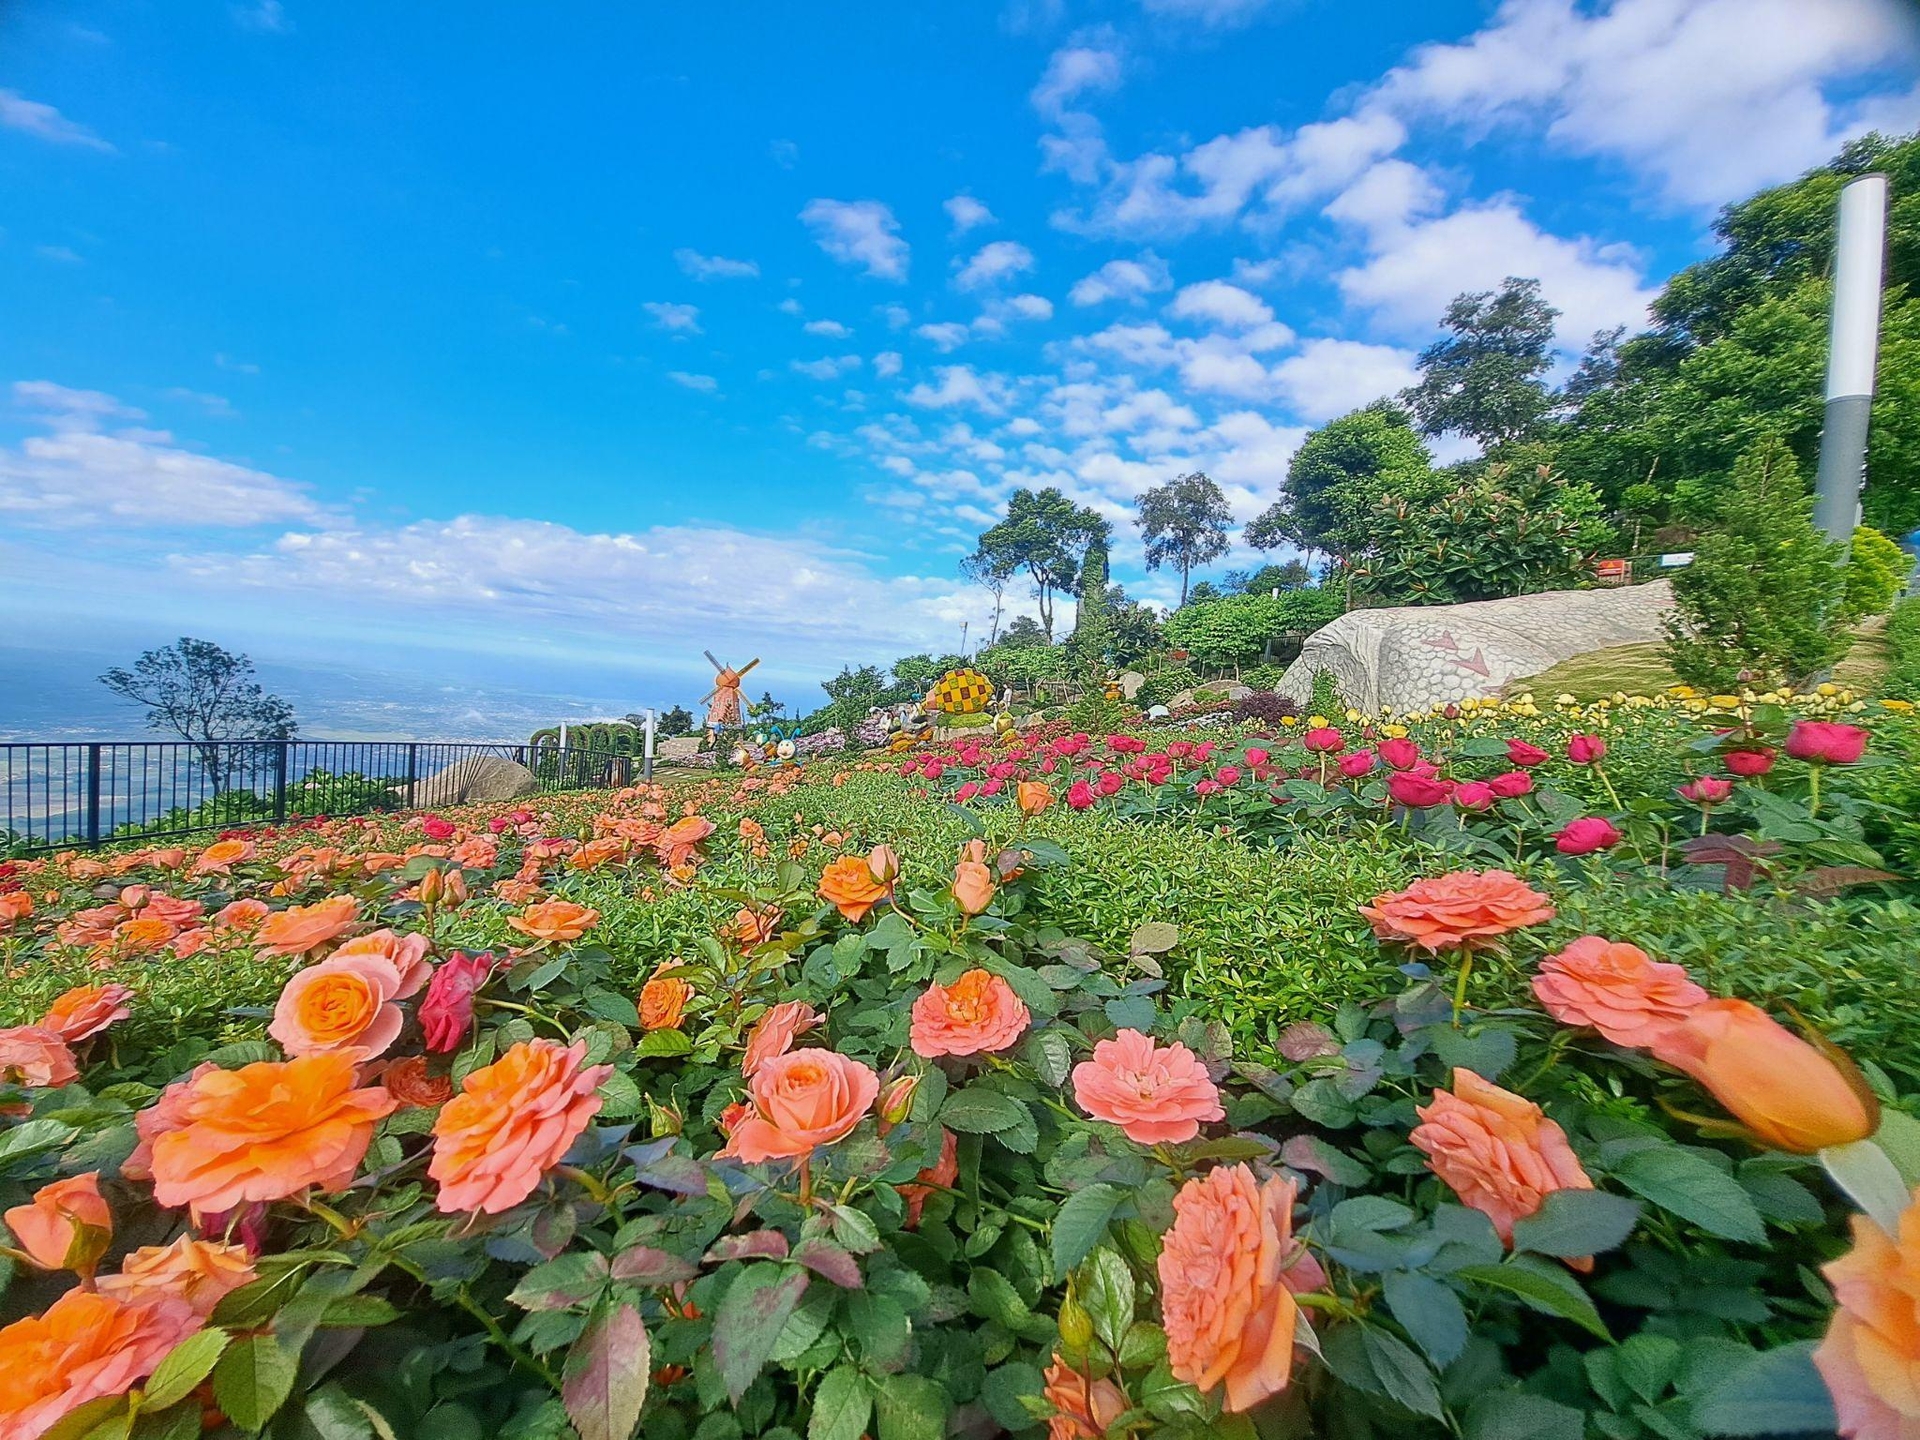 Hàng trăm loài hoa nở rộ cùng thảm cây xanh giữa không gian khoáng đạt, trong lành trên đỉnh núi Bà Đen khiến nhiều du khách liên tưởng đến Đà Lạt. Ảnh: Sun World Ba Den Mountain.